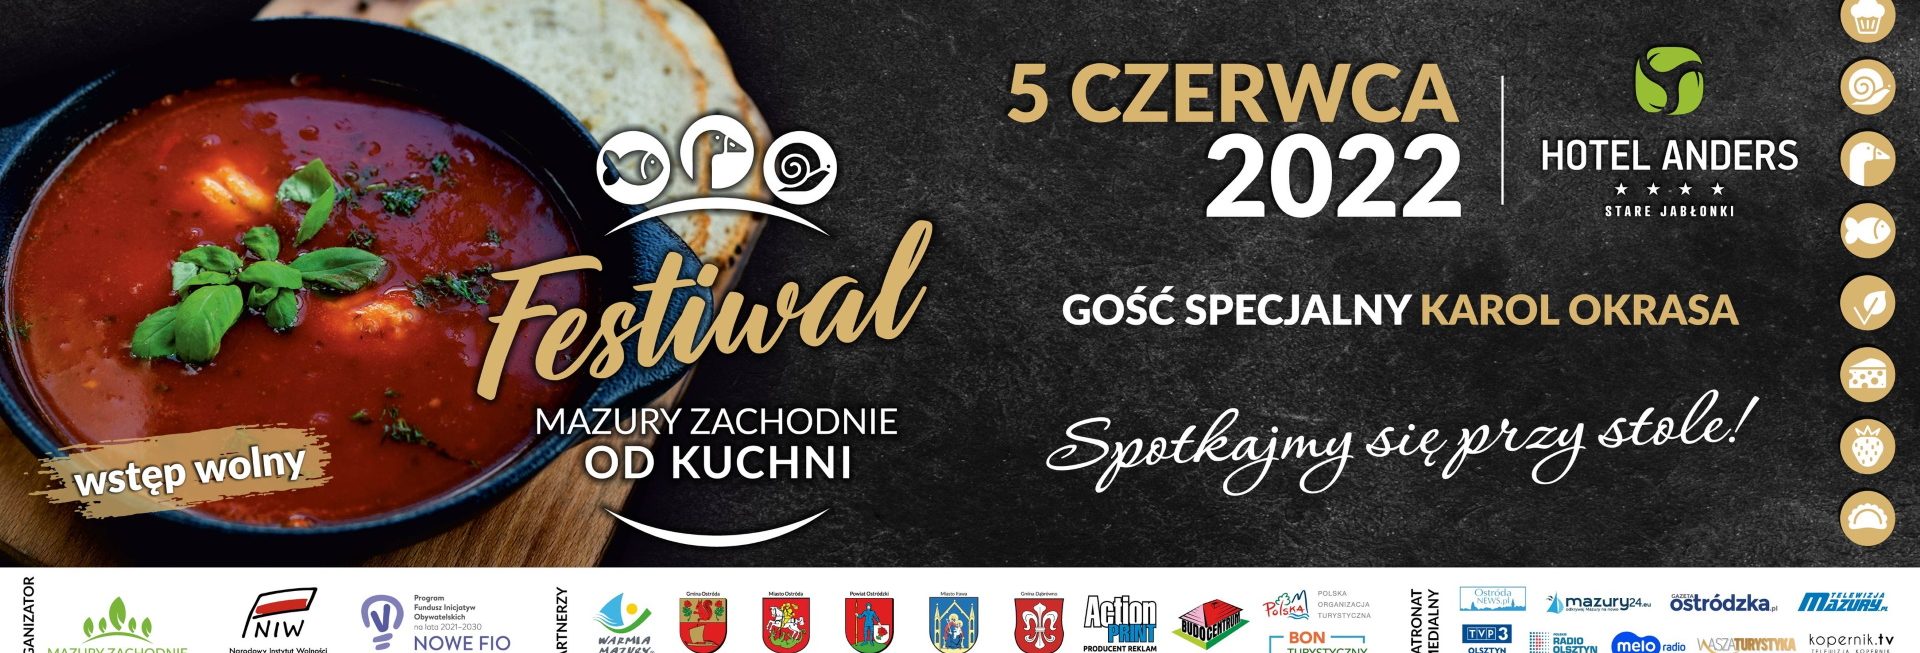 Plakat graficzny zapraszający do Starych Jabłonek na Festiwal Kulinarny Mazury Zachodnie od Kuchni Stare Jabłonki 2022.